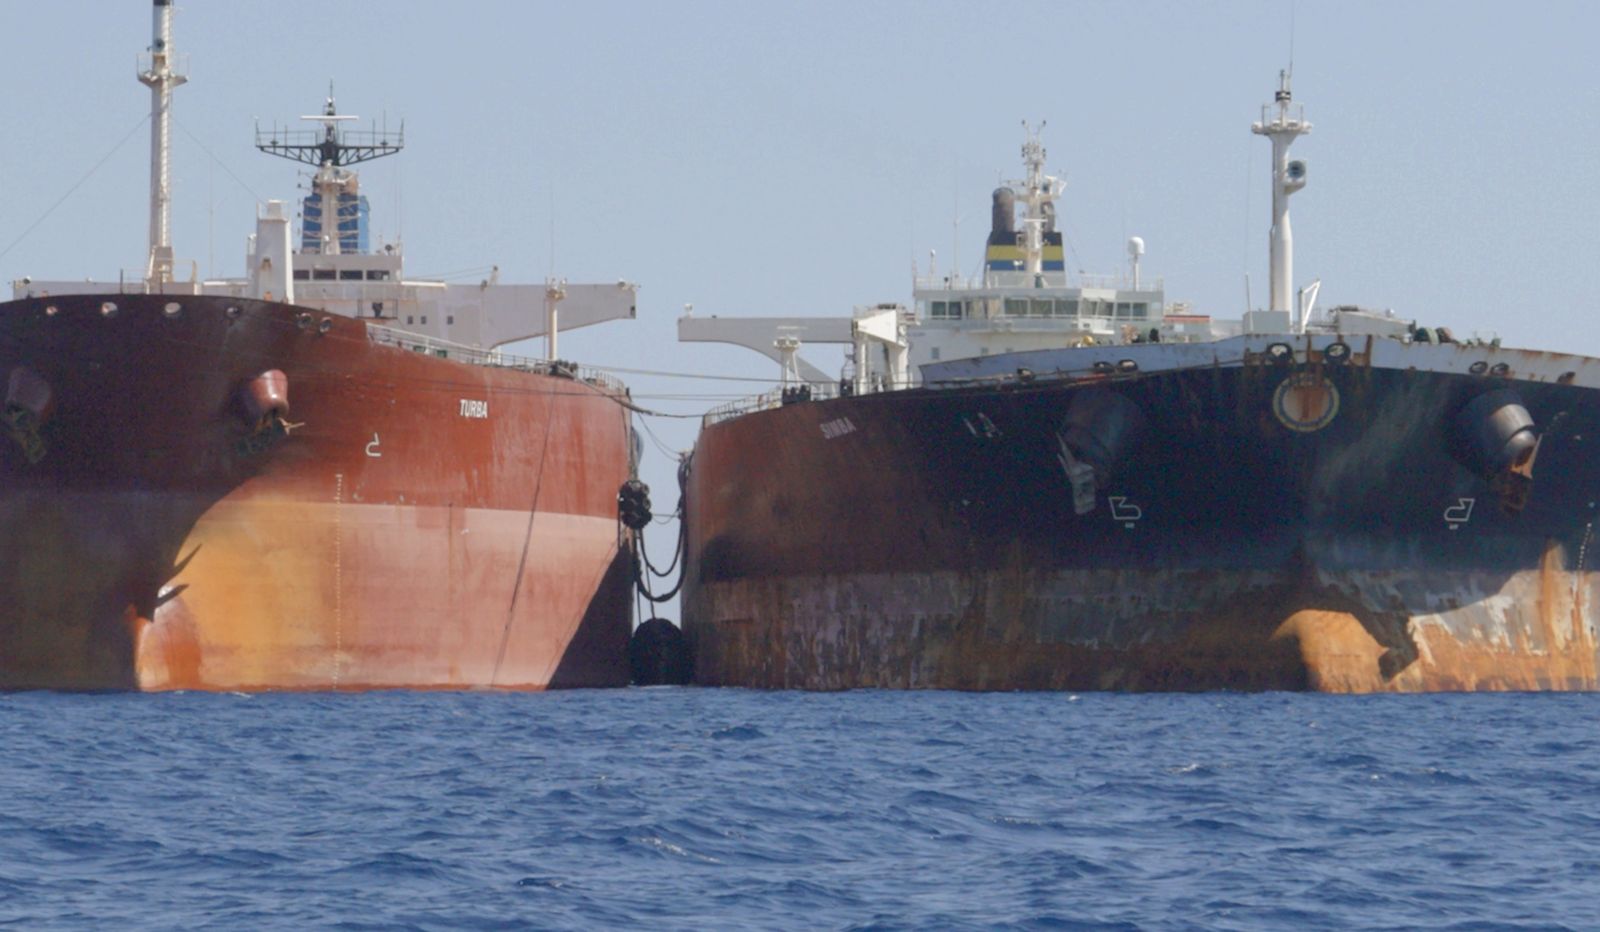 الاتحاد الأوروبي يفرض عقوبات على 27 سفينة "تساعد روسيا"" width="252" height="168" loading="lazy